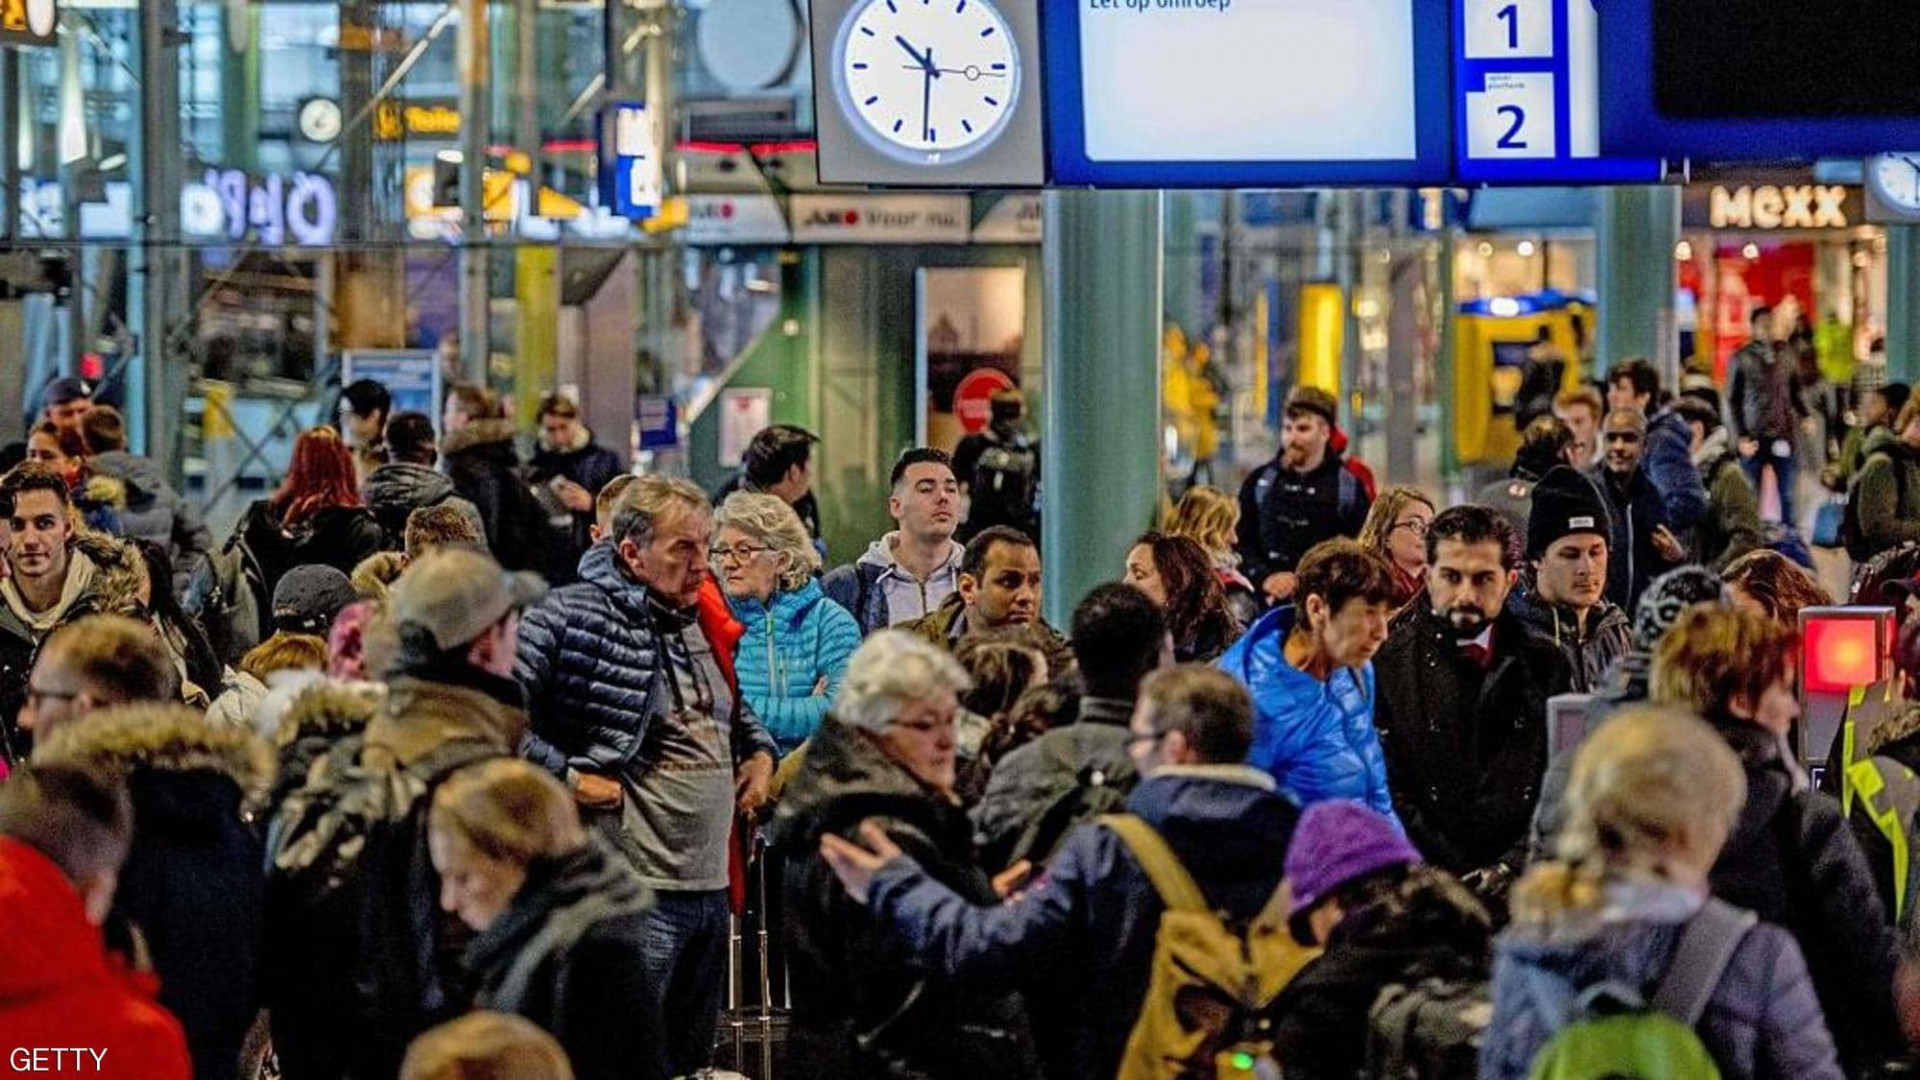 "تهديد إرهابي" يخلي محطة قطار رئيسية في هولندا